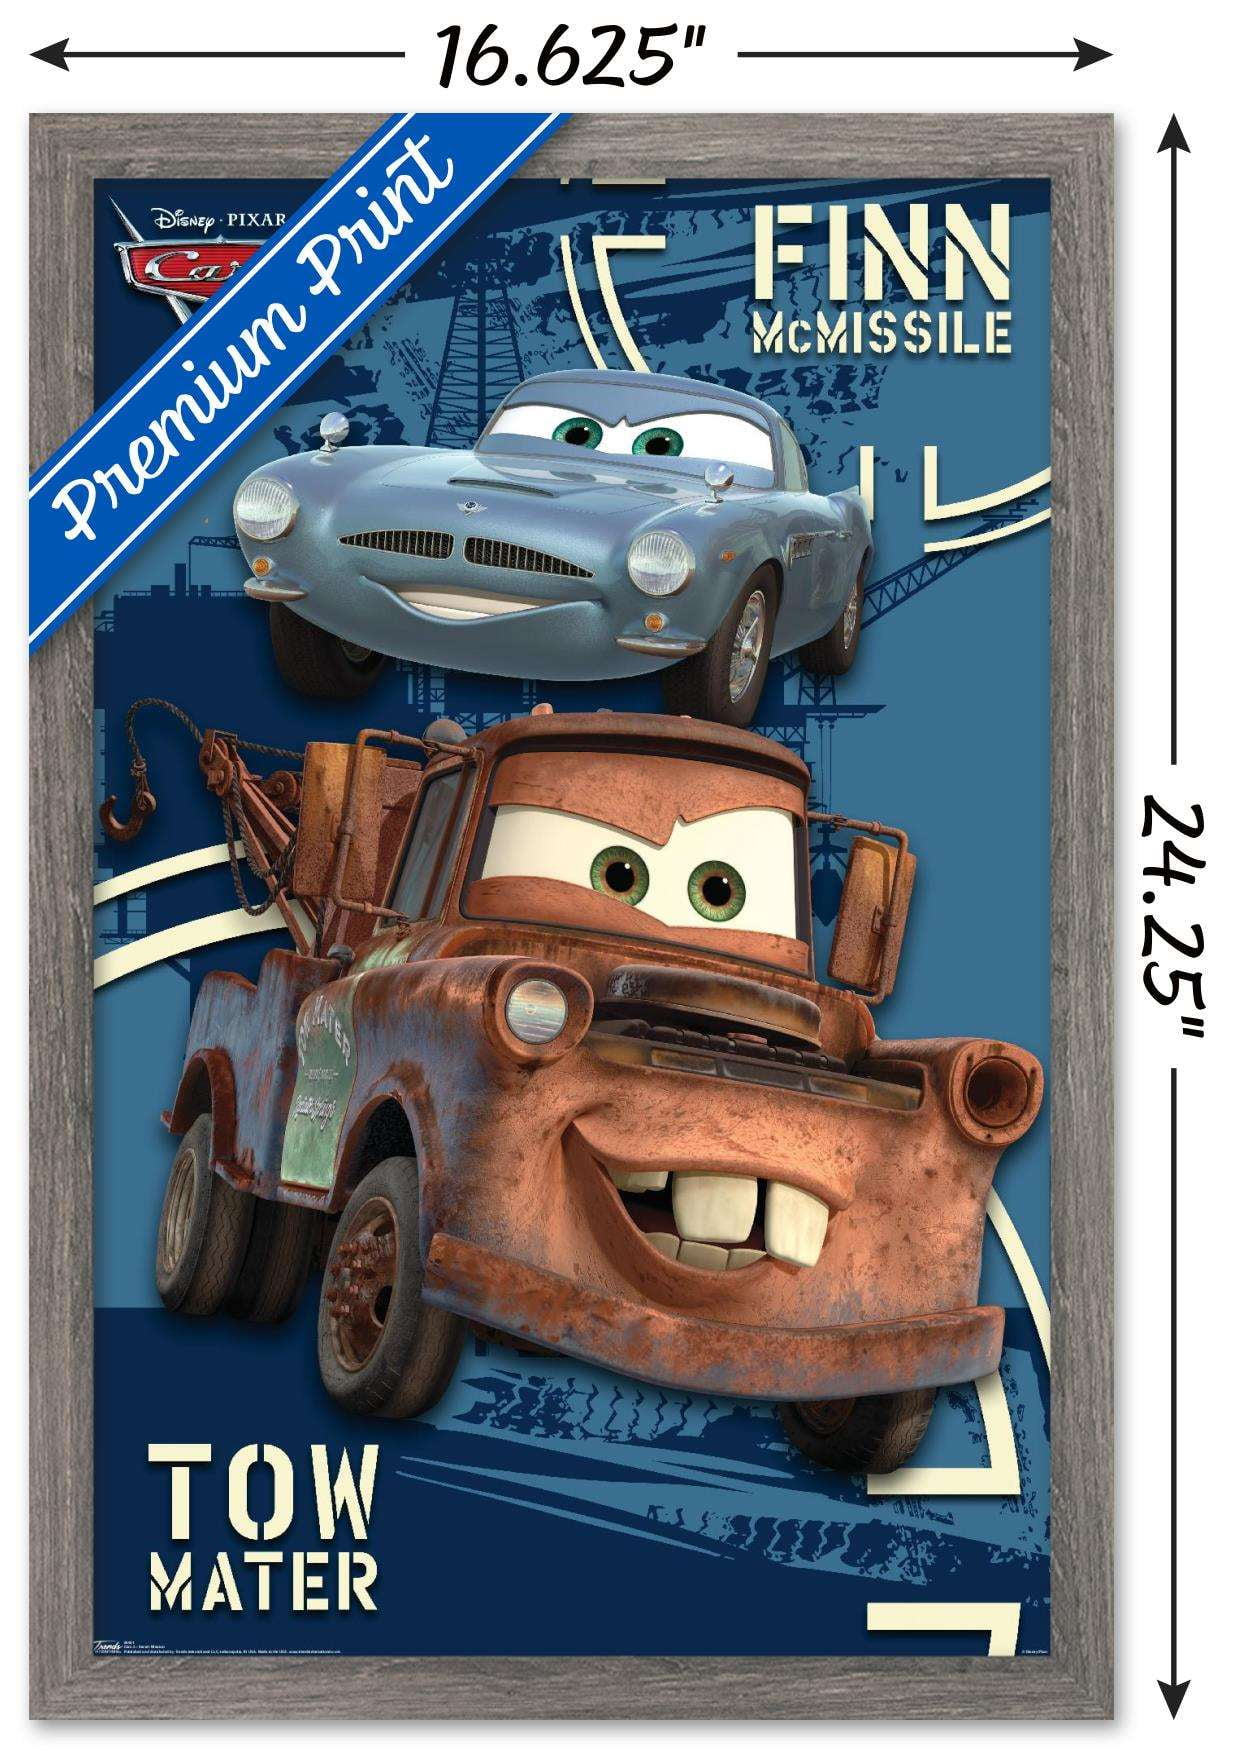 Disney Cars Mater Poster Disney Pixar Cars Mater Disney Bedroom Disney 